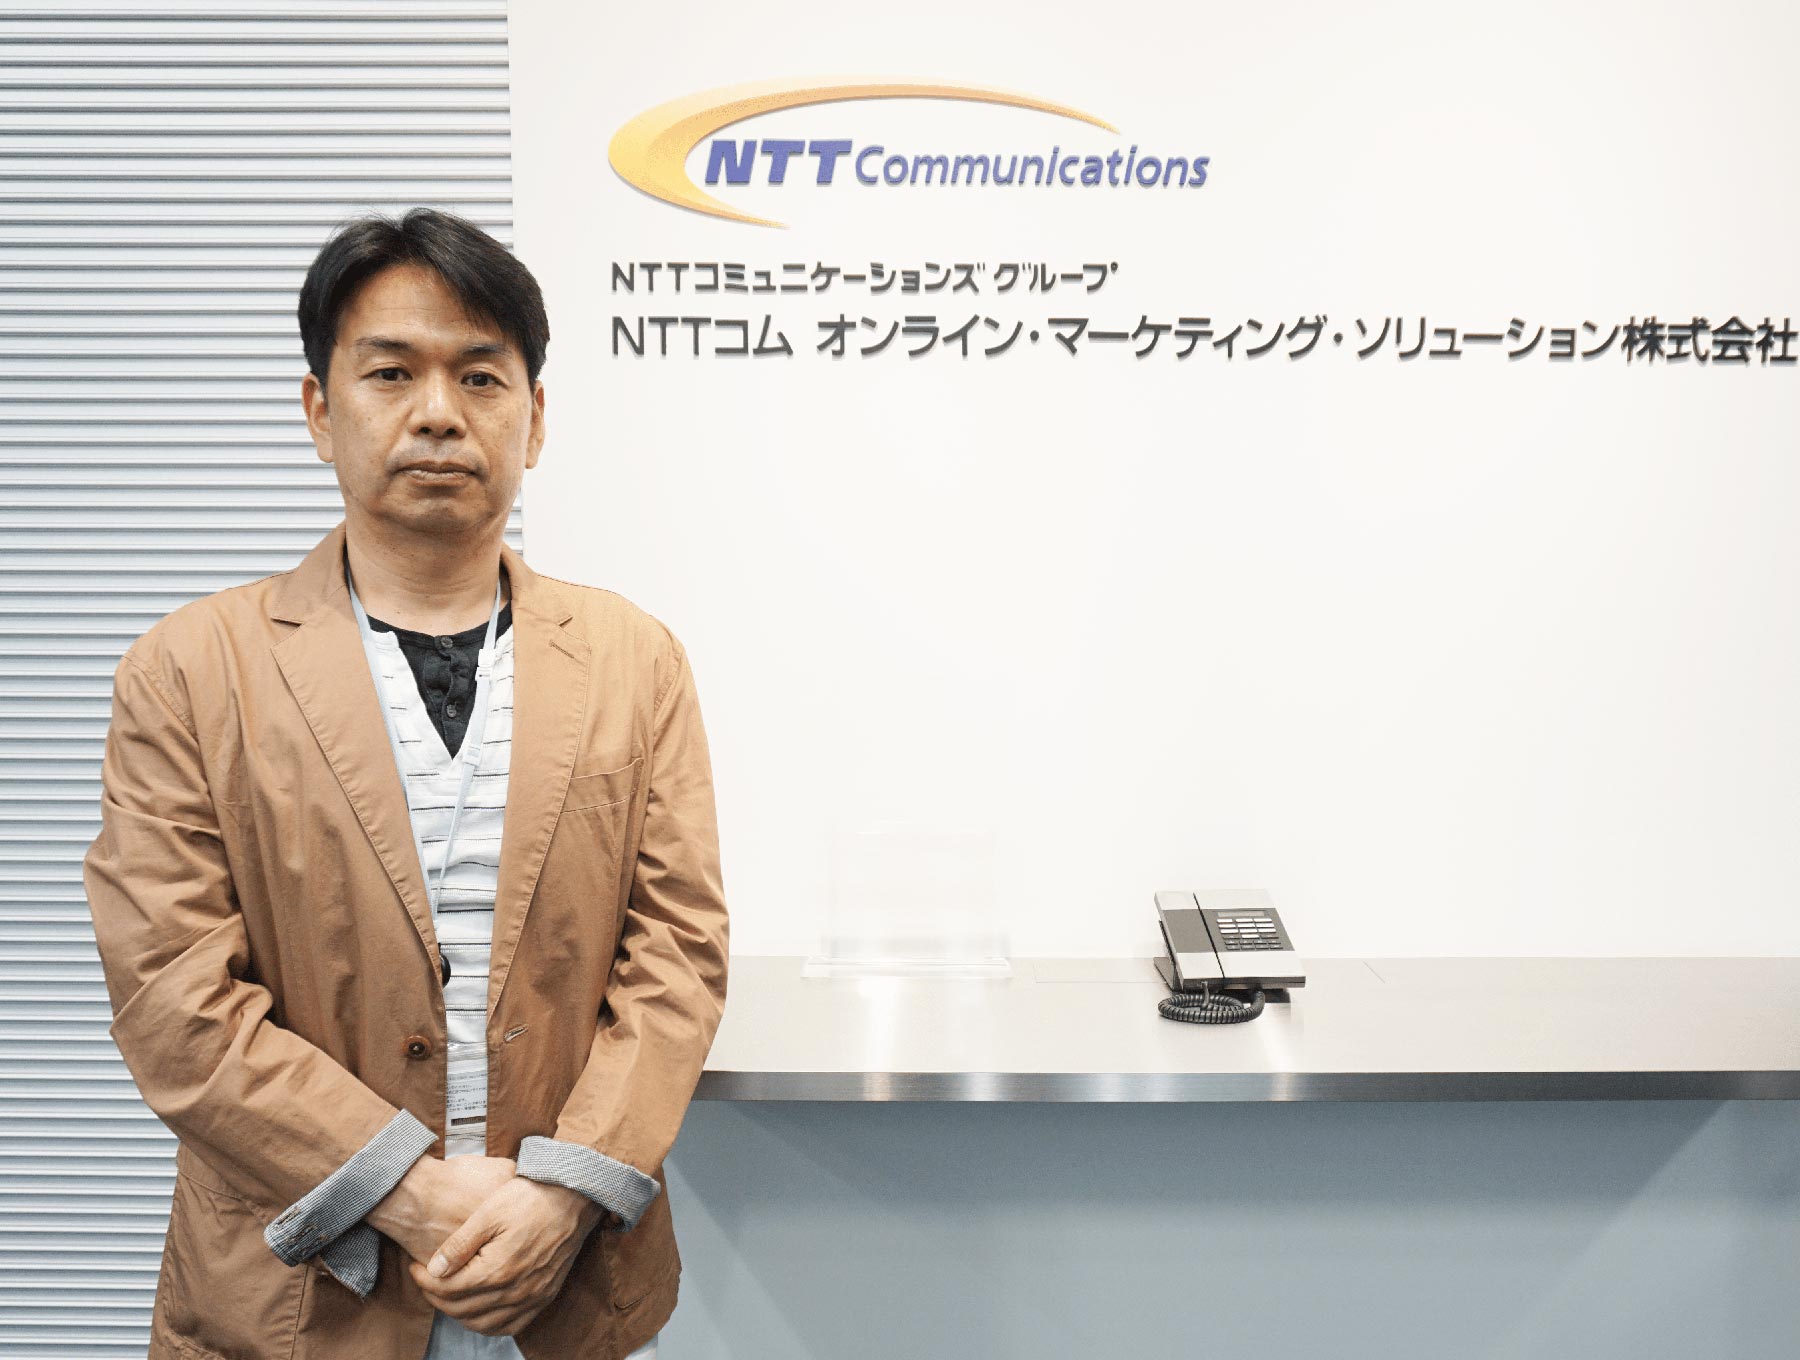 NTTコム オンライン ビジネスメッセージ・サービス部 担当部長 福谷 圭司様